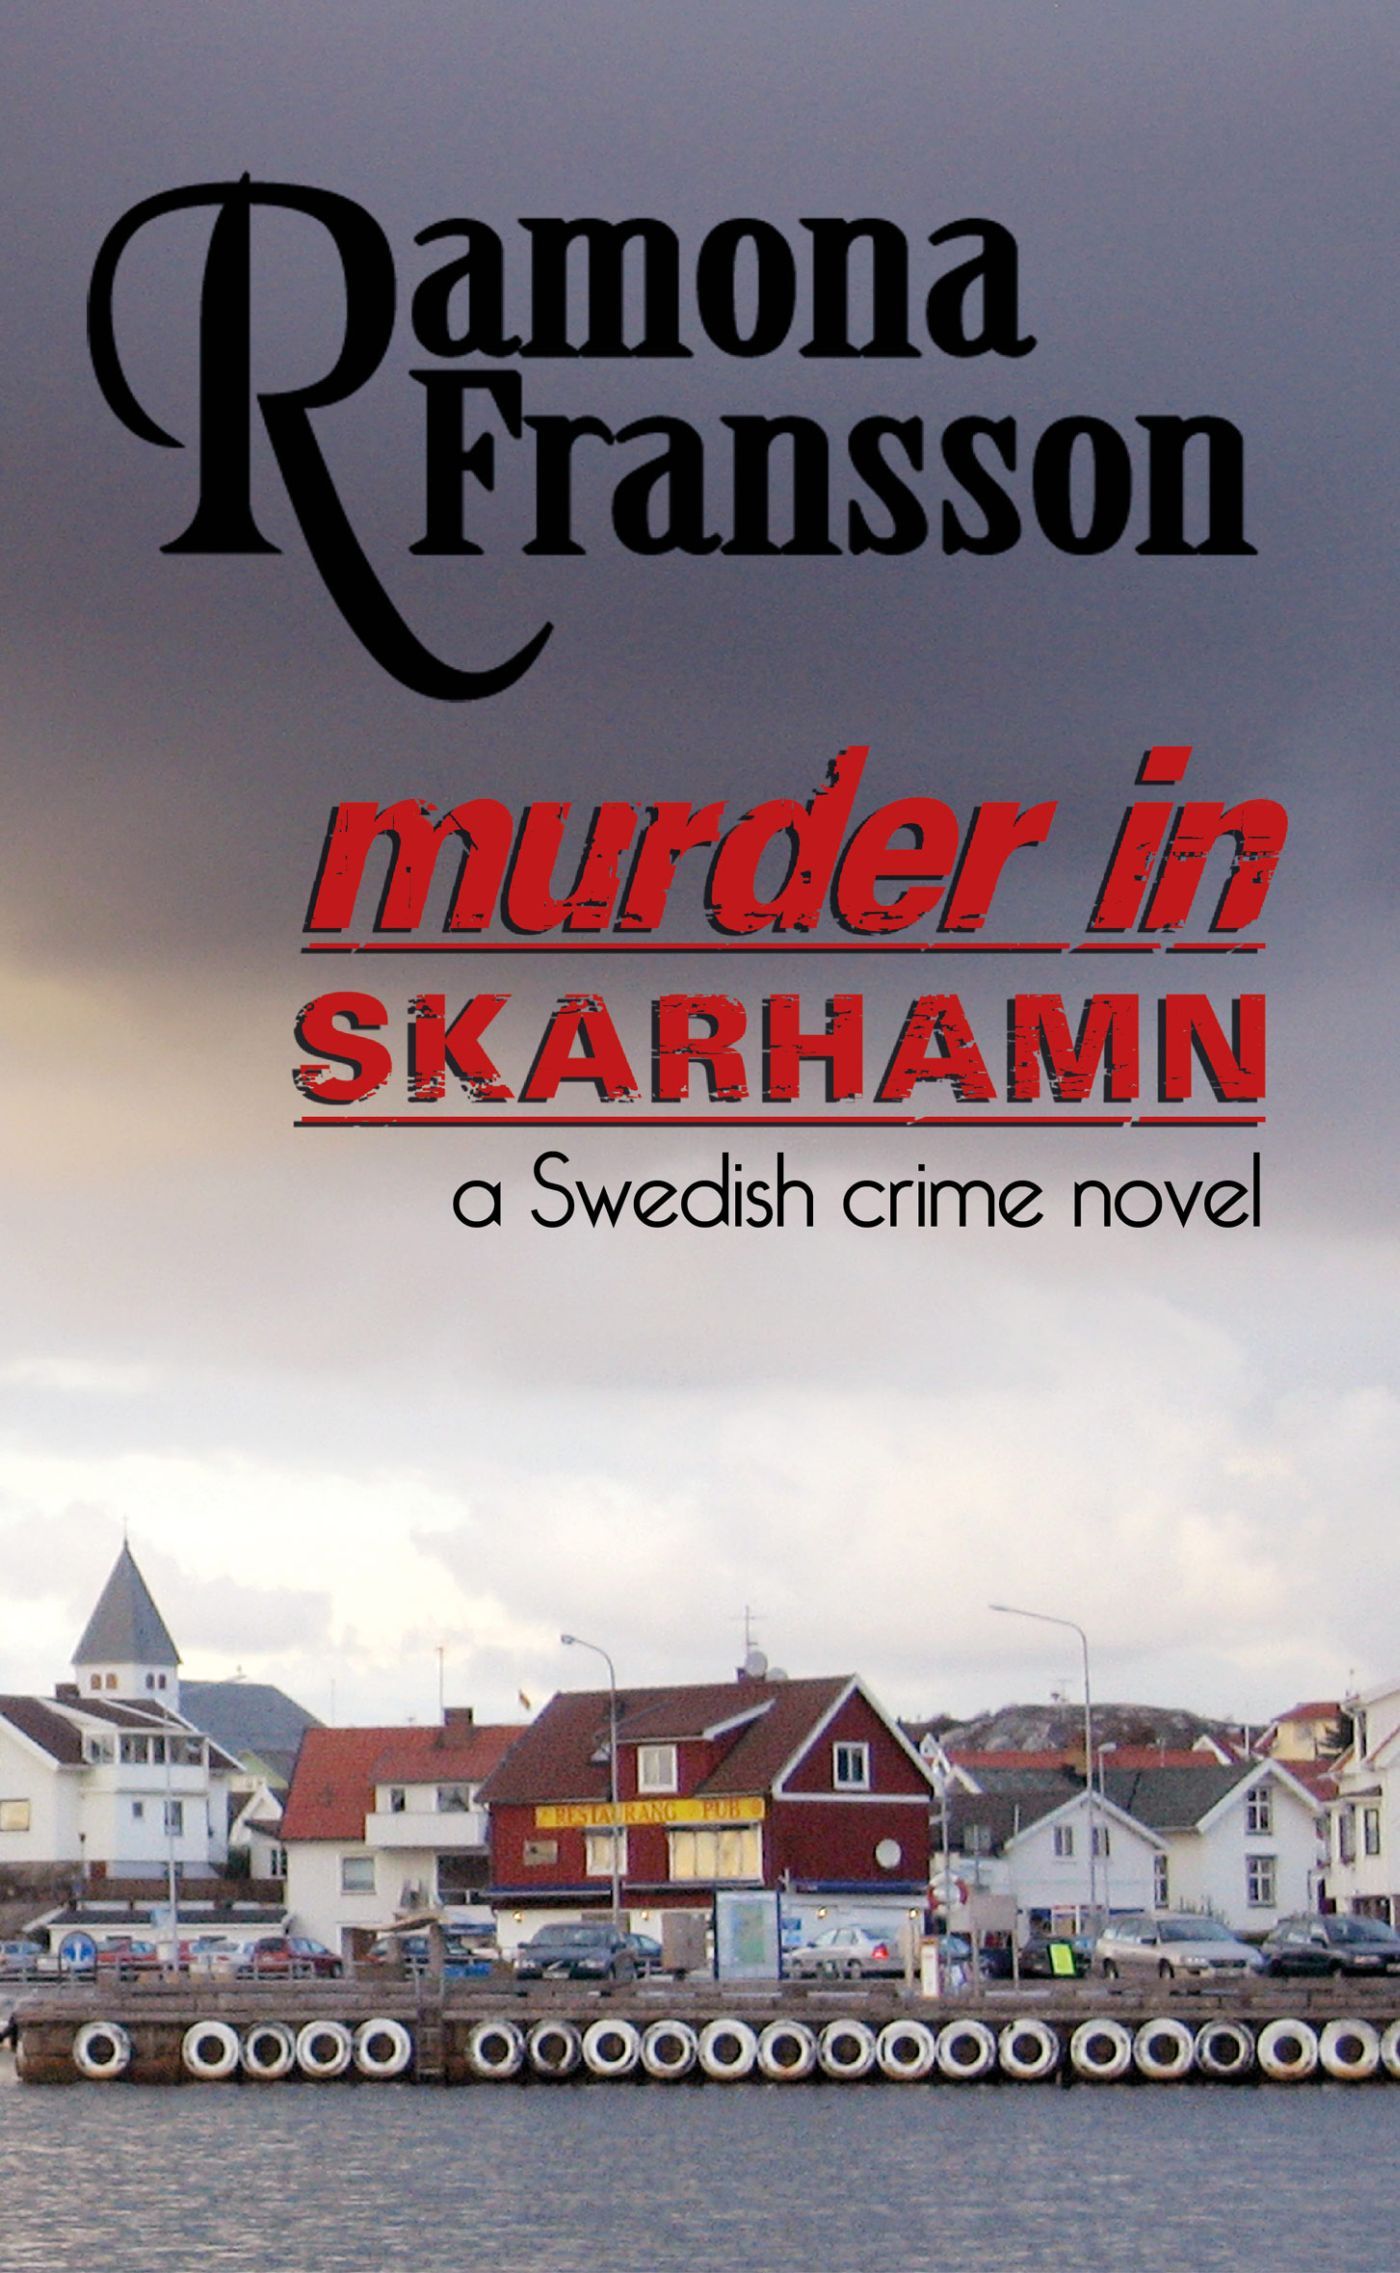 Murder in Skarhamn: a Swedish Crime Novel, e-bog af Ramona Fransson